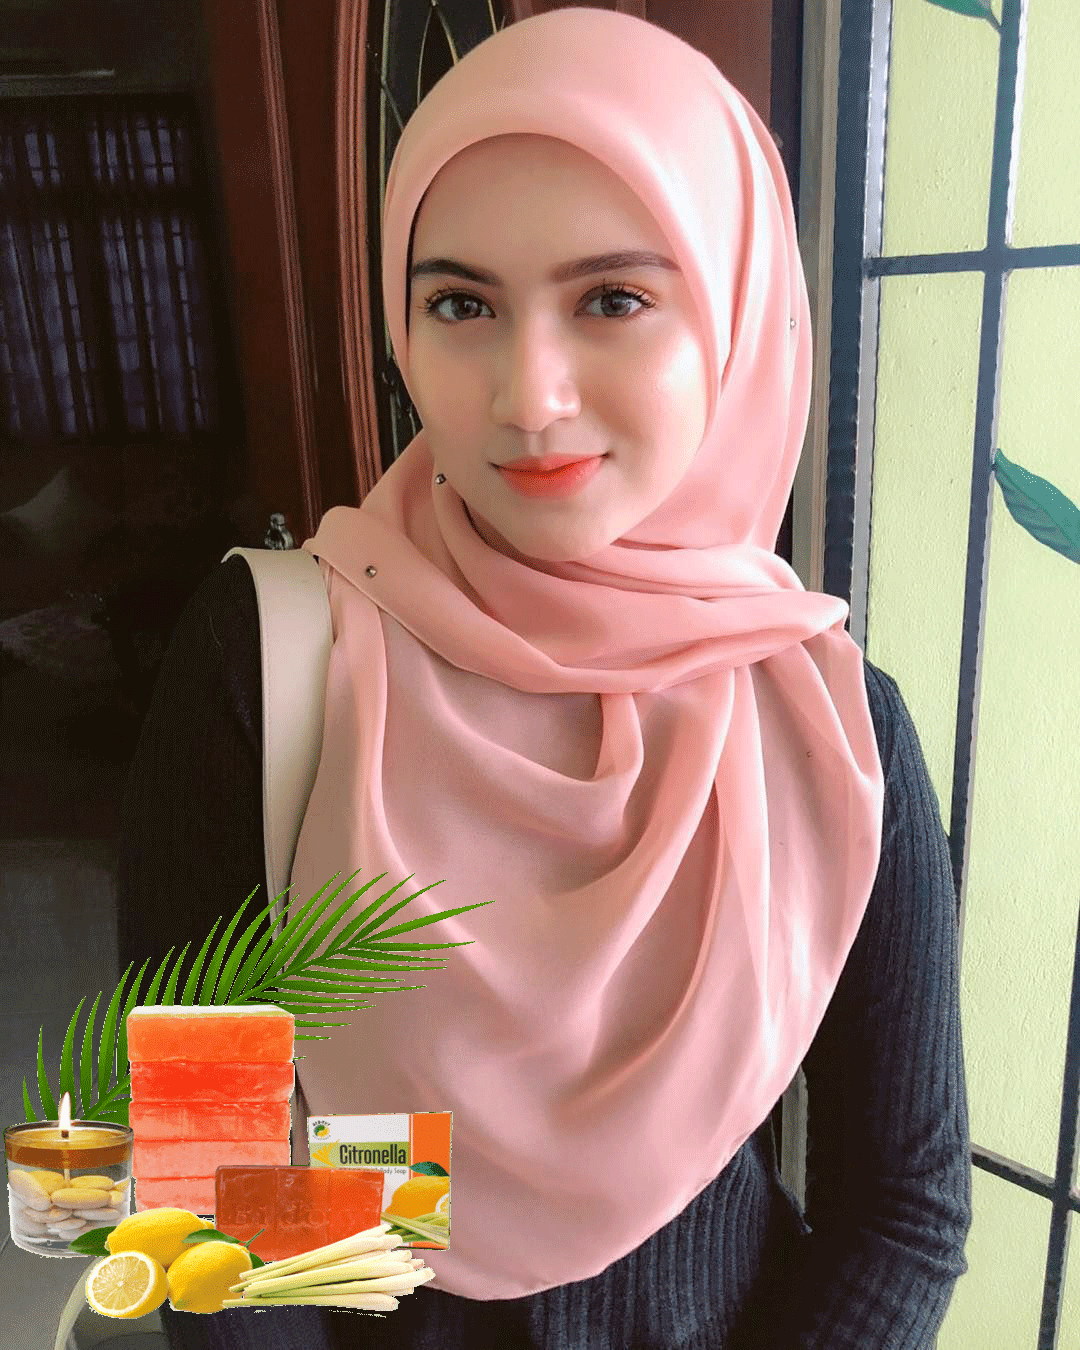 Jual Sabun Citronella Asli Original Terbaru di Karang Bahagia Bekasi Jawa Barat G-tren Indonesia